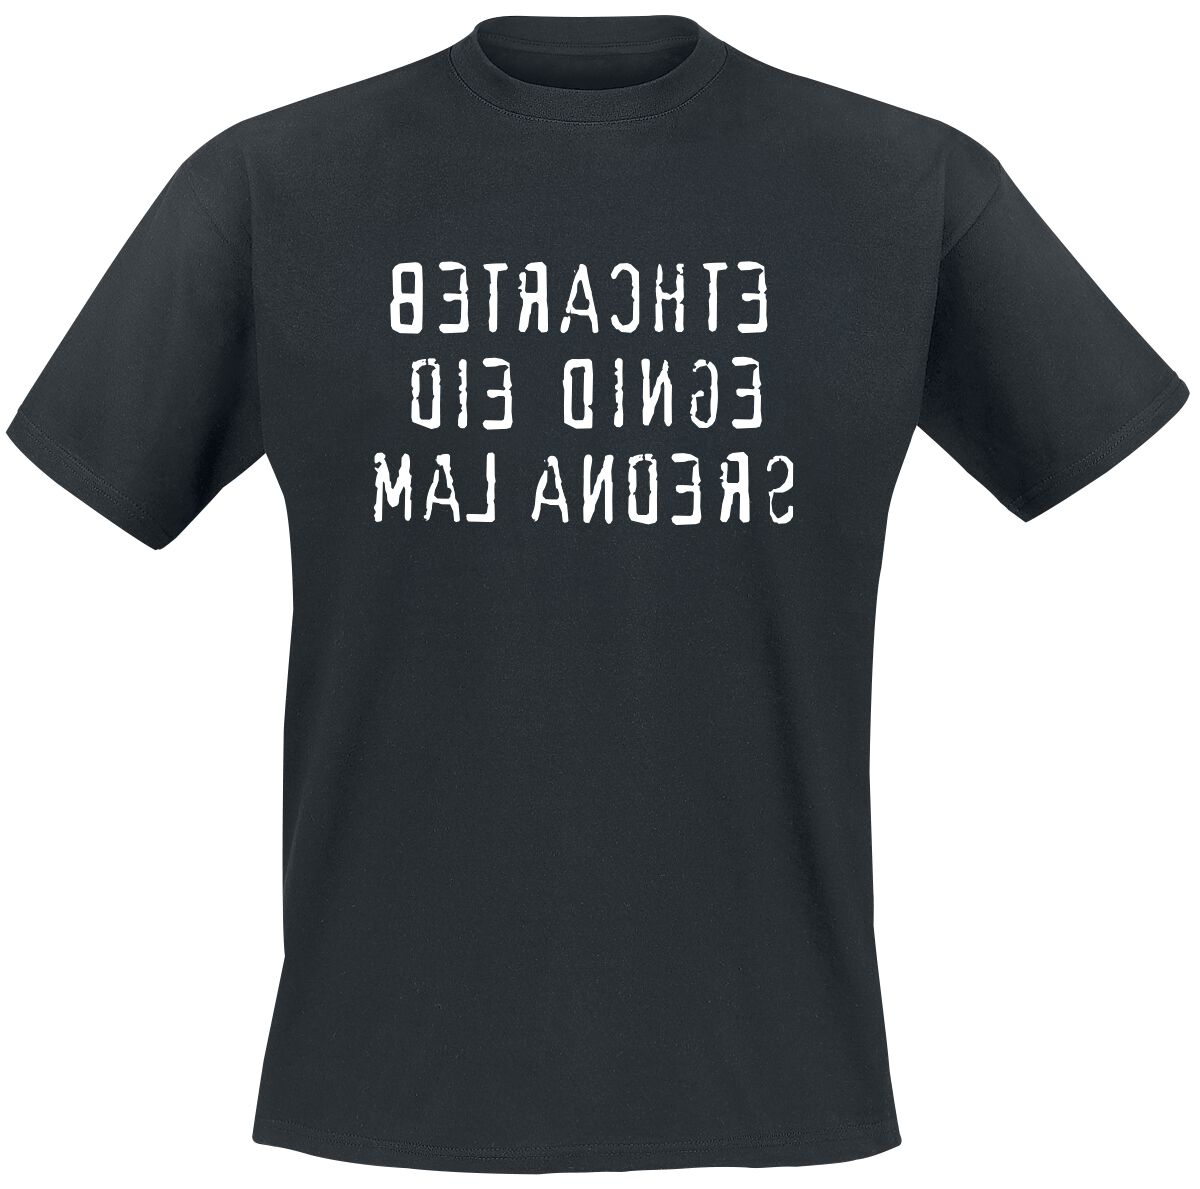 Sprüche T-Shirt - Betrachte die Dinge mal anders - M bis 4XL - für Männer - Größe 4XL - schwarz